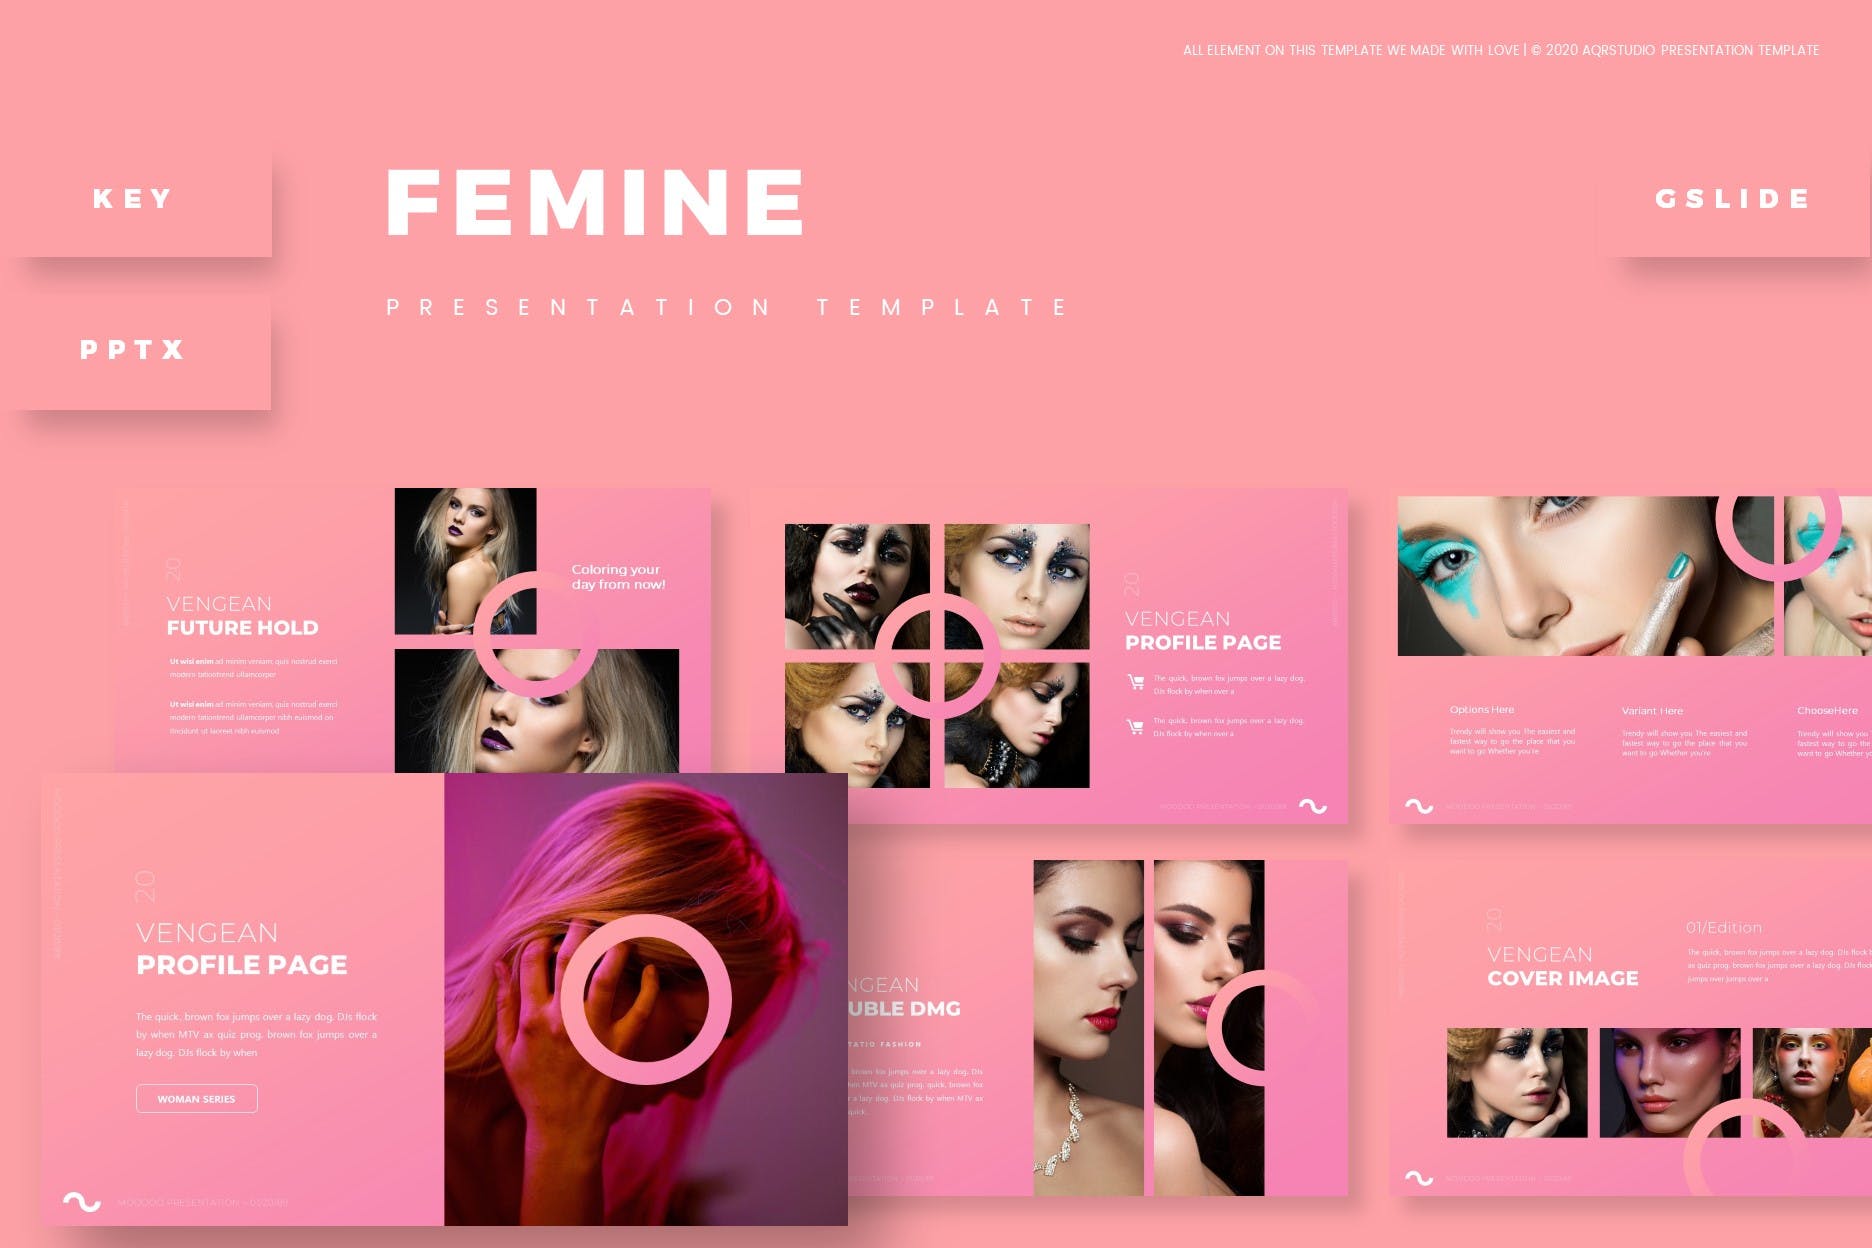 彩妆主题粉色背景产品展示PPT演示模板 Femine – Presentation Template设计素材模板